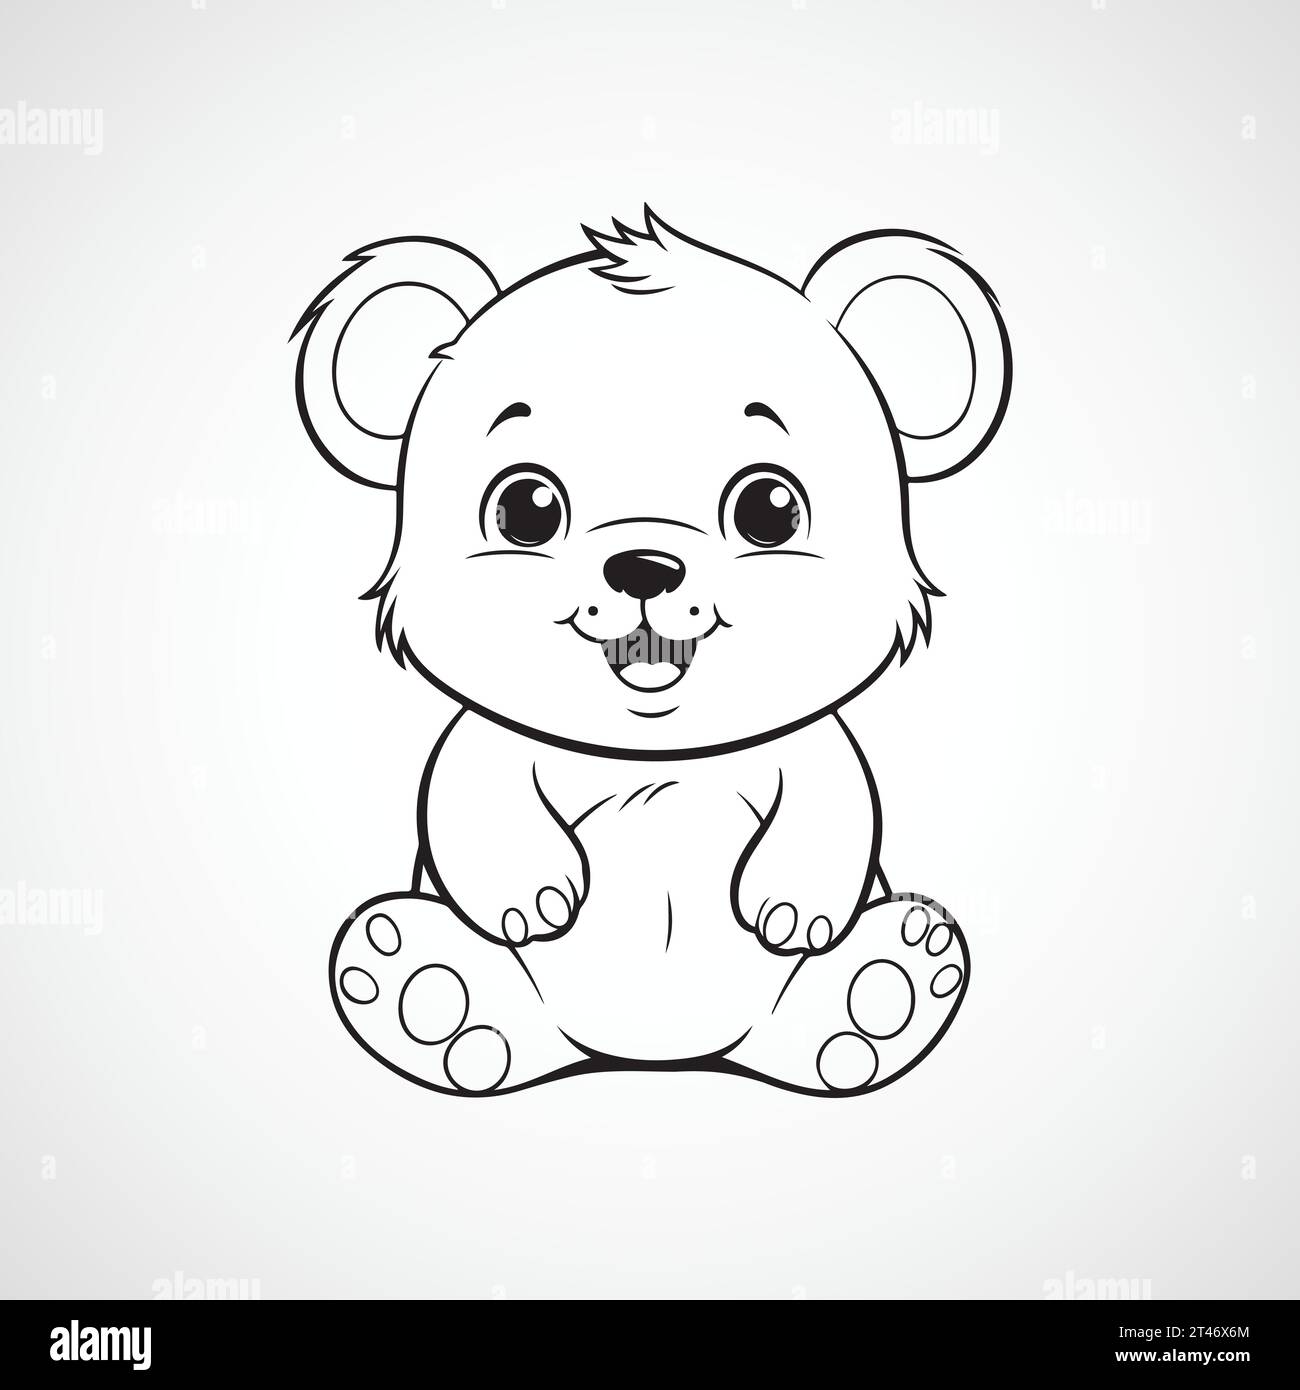 Vector cute teddy bear illustration Stock Vector